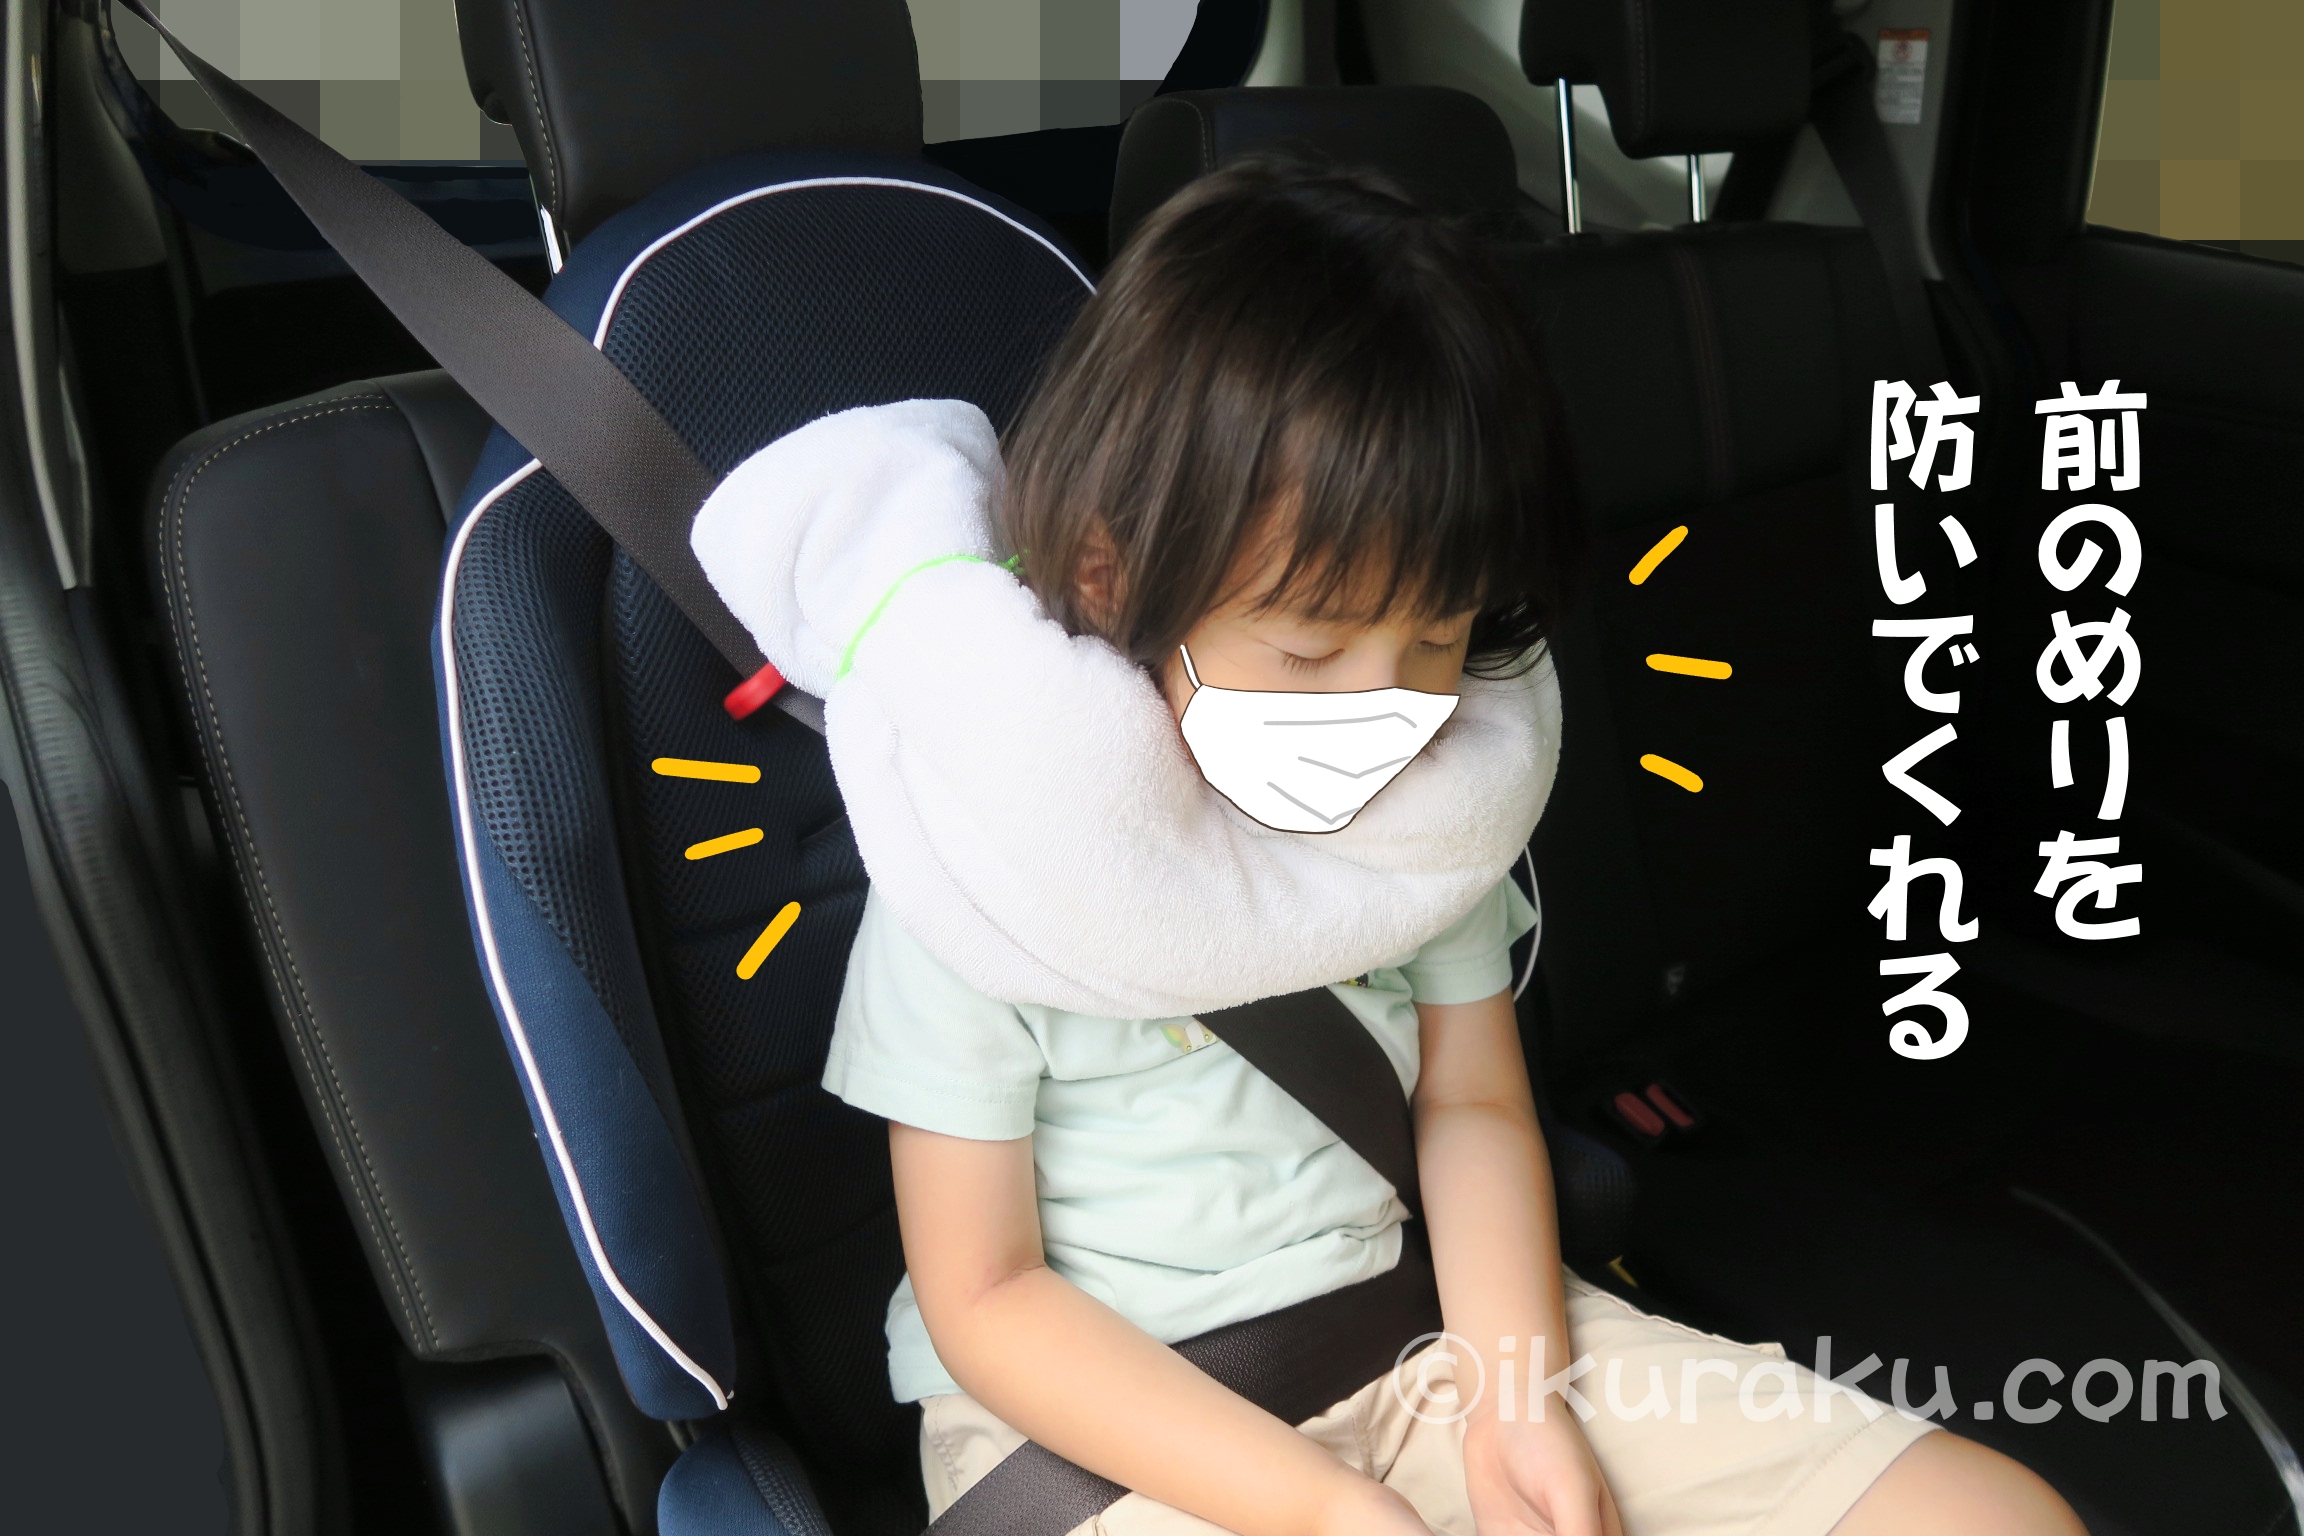 チャイルドシートで寝る子の前のめり対策で首の前をタオルで包む方法 ③タオルを子どもの首の前を包むようにして巻く　前のめりをタオルが防いでくれる